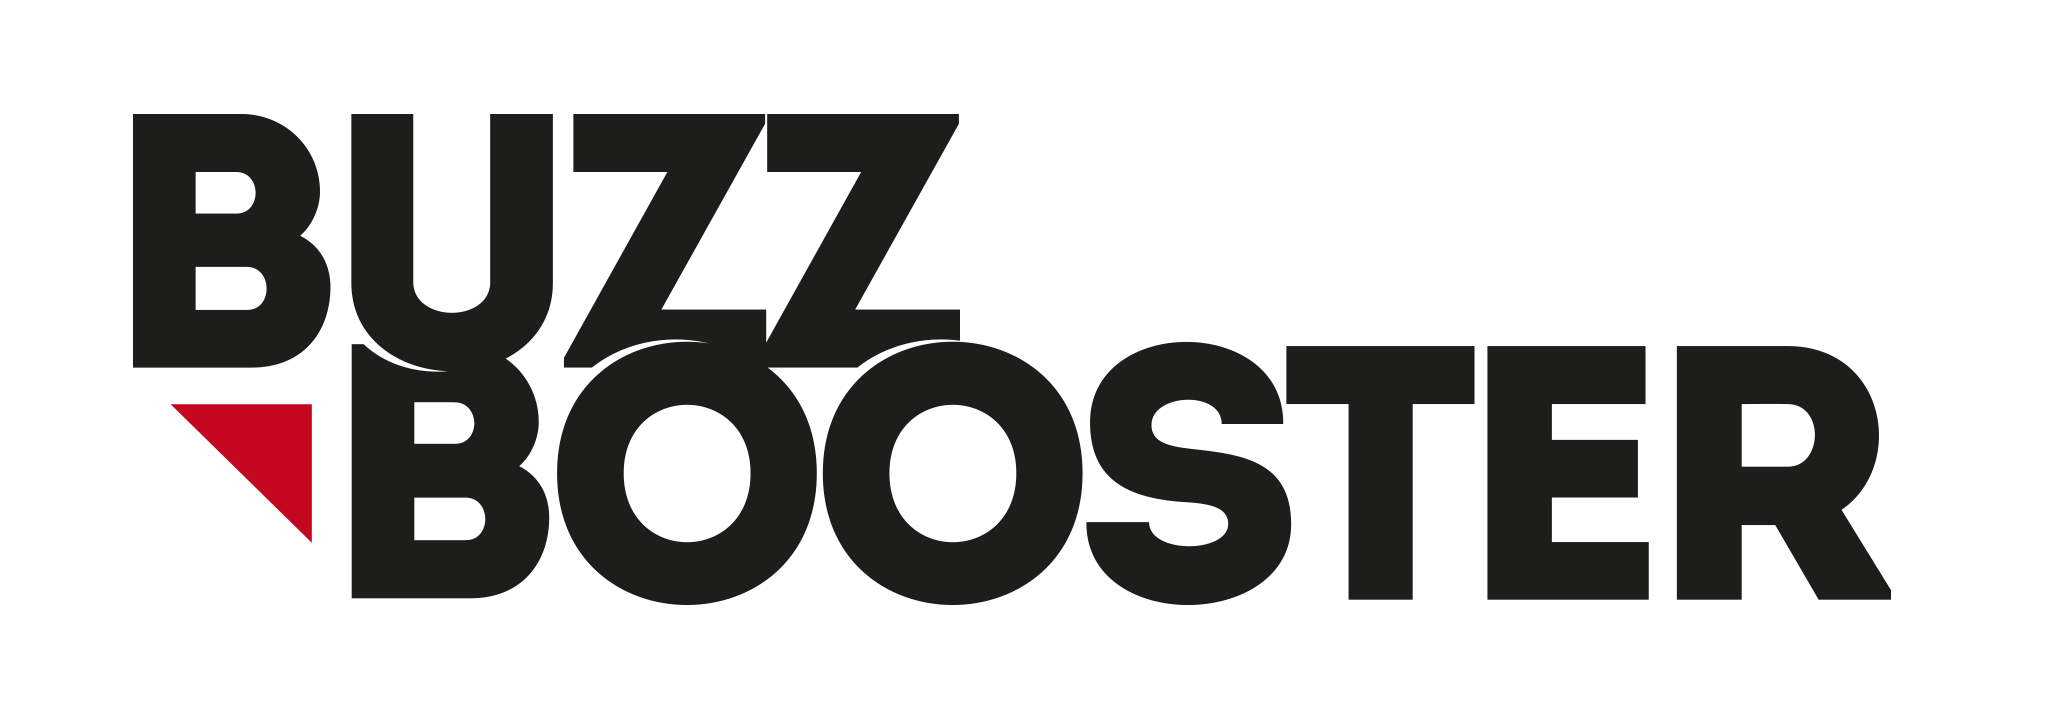 Logo Buzz Booster